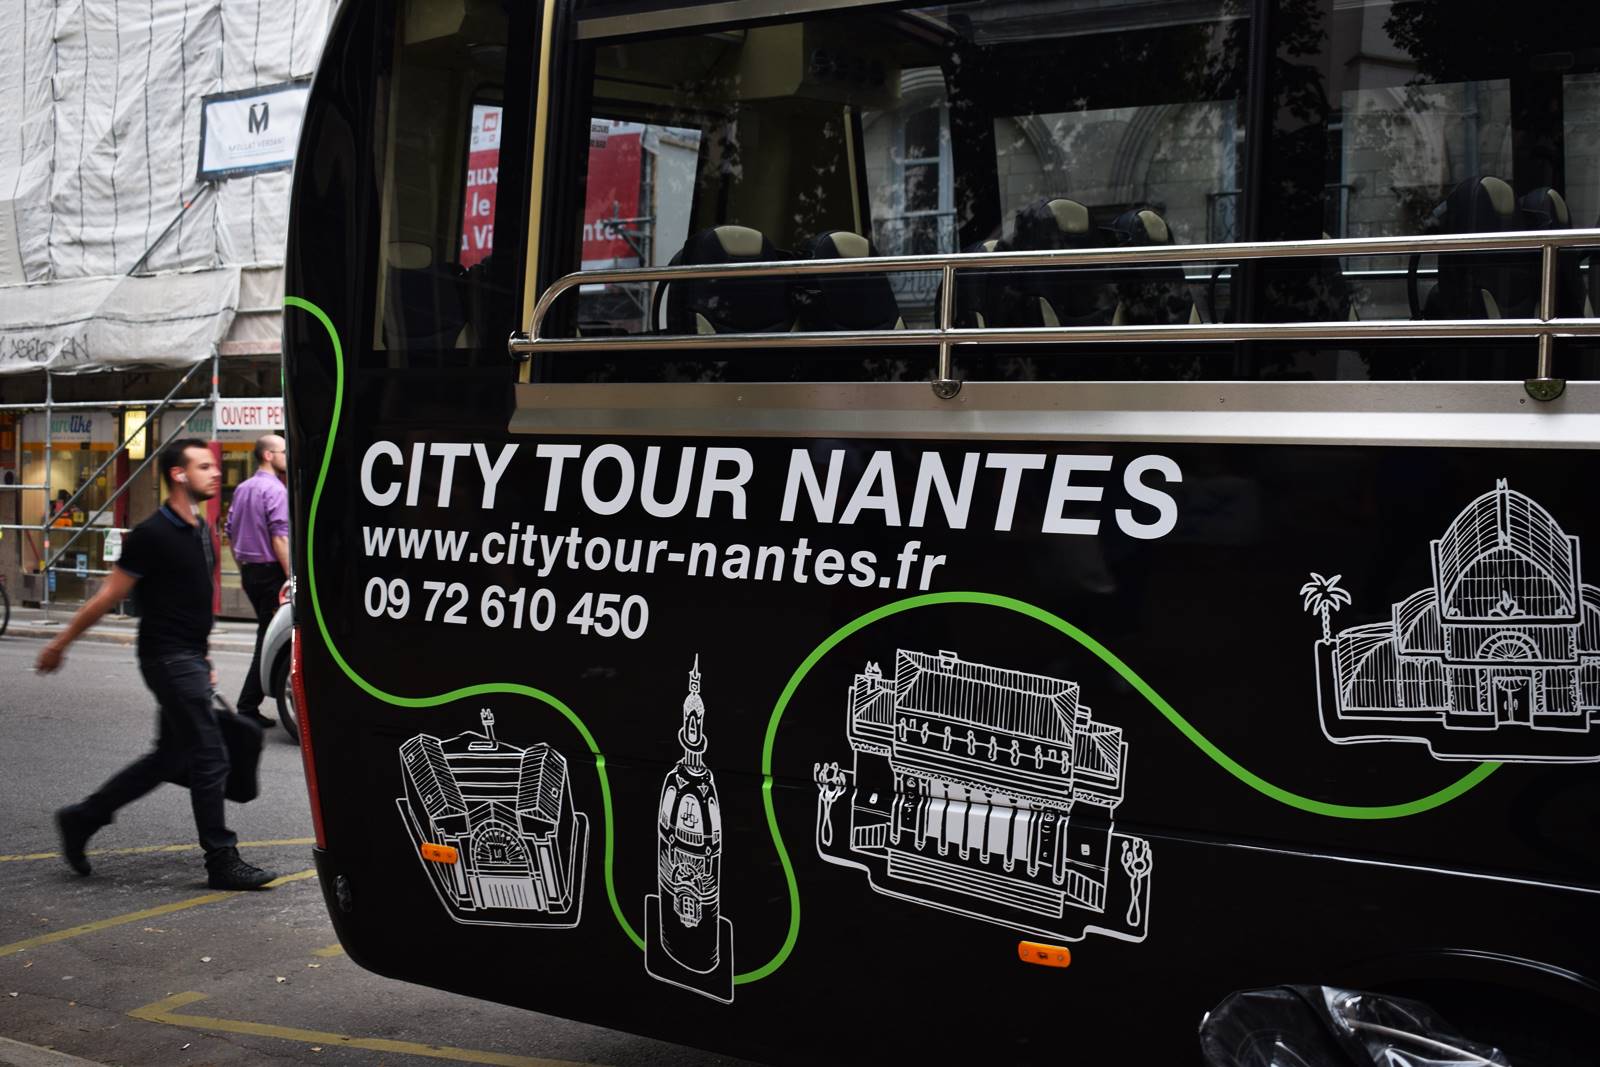 City tour nantes